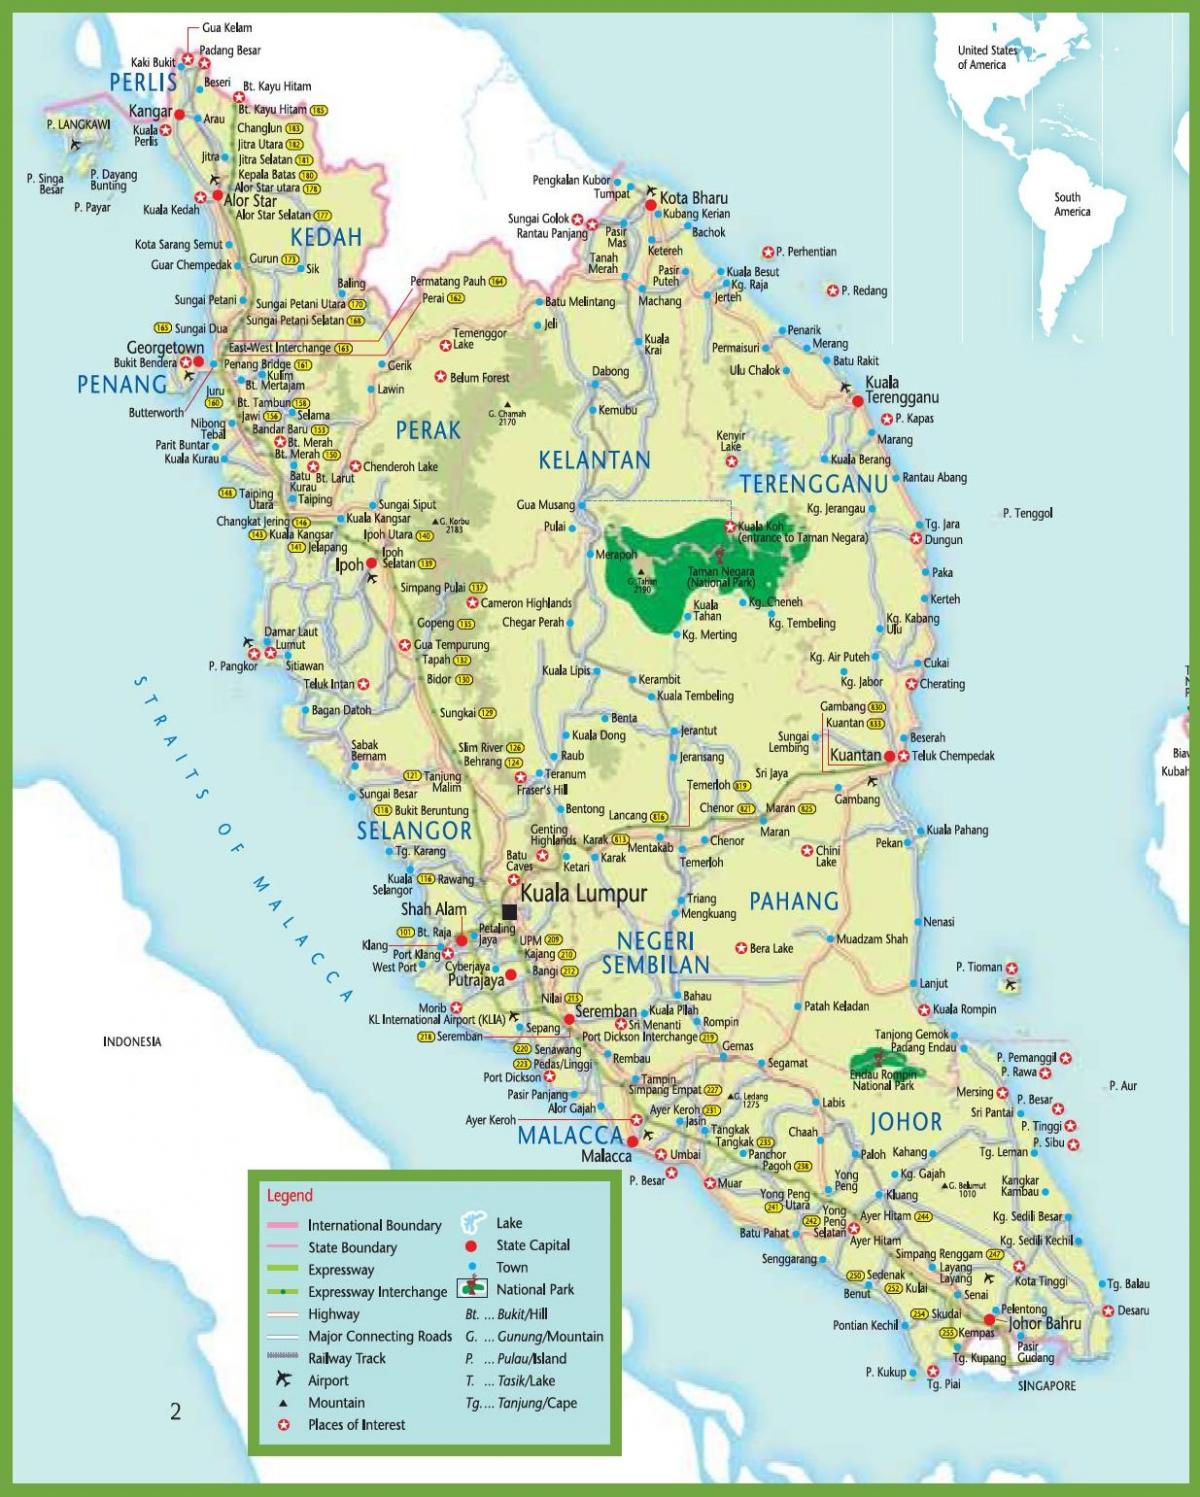 mrt نقشہ میں ملائیشیا